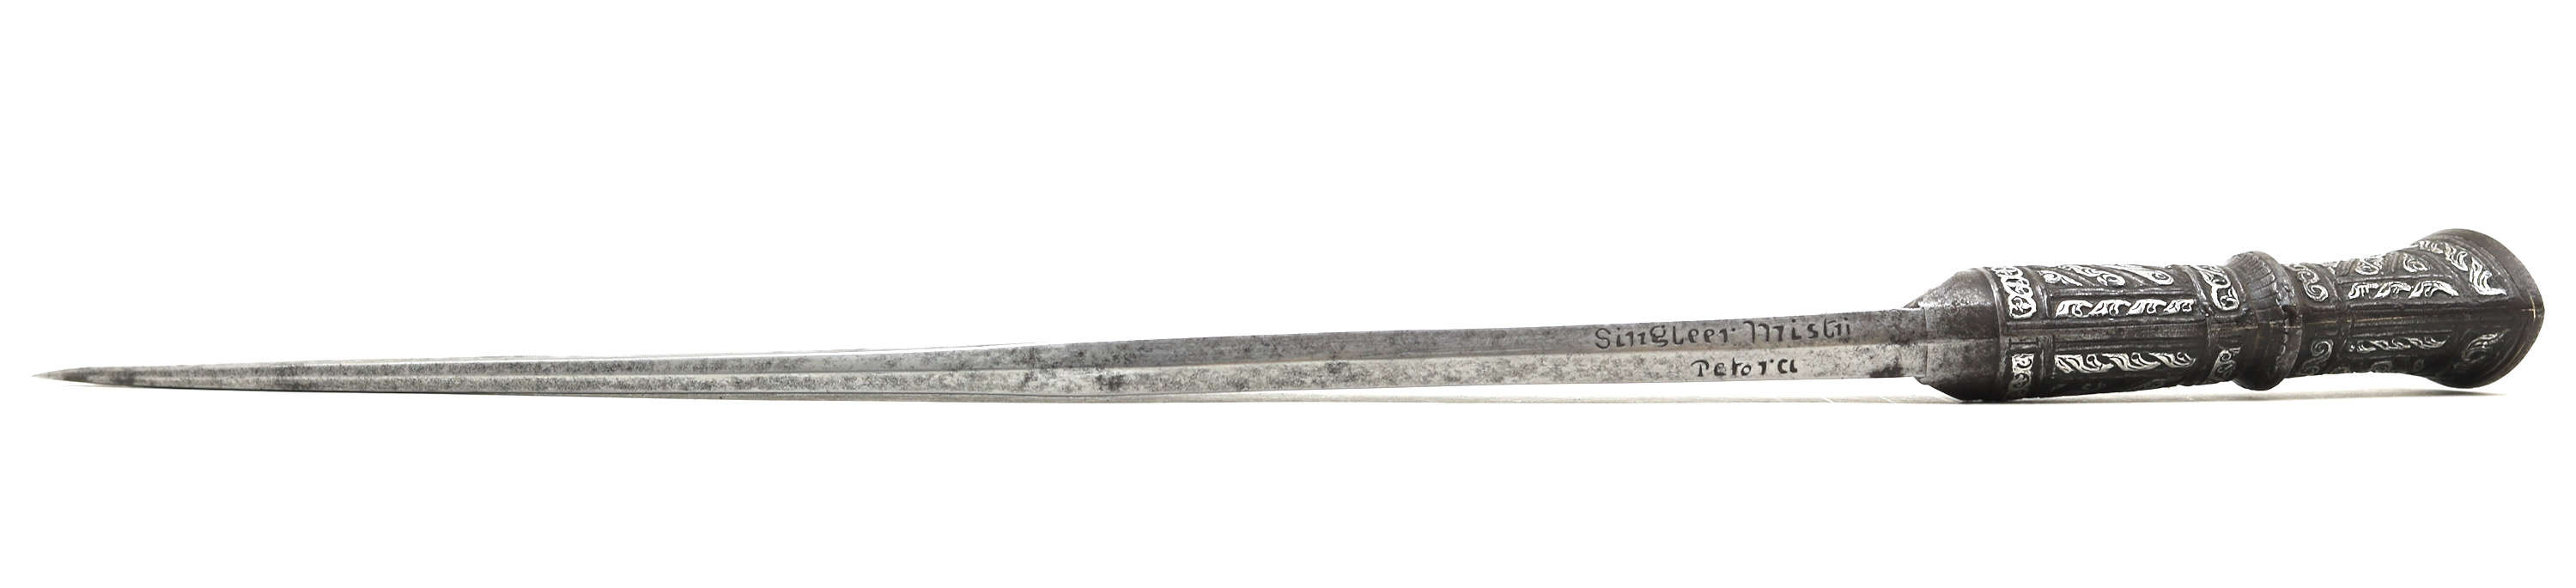 Fine 1850s khukuri with quillwork scabbard